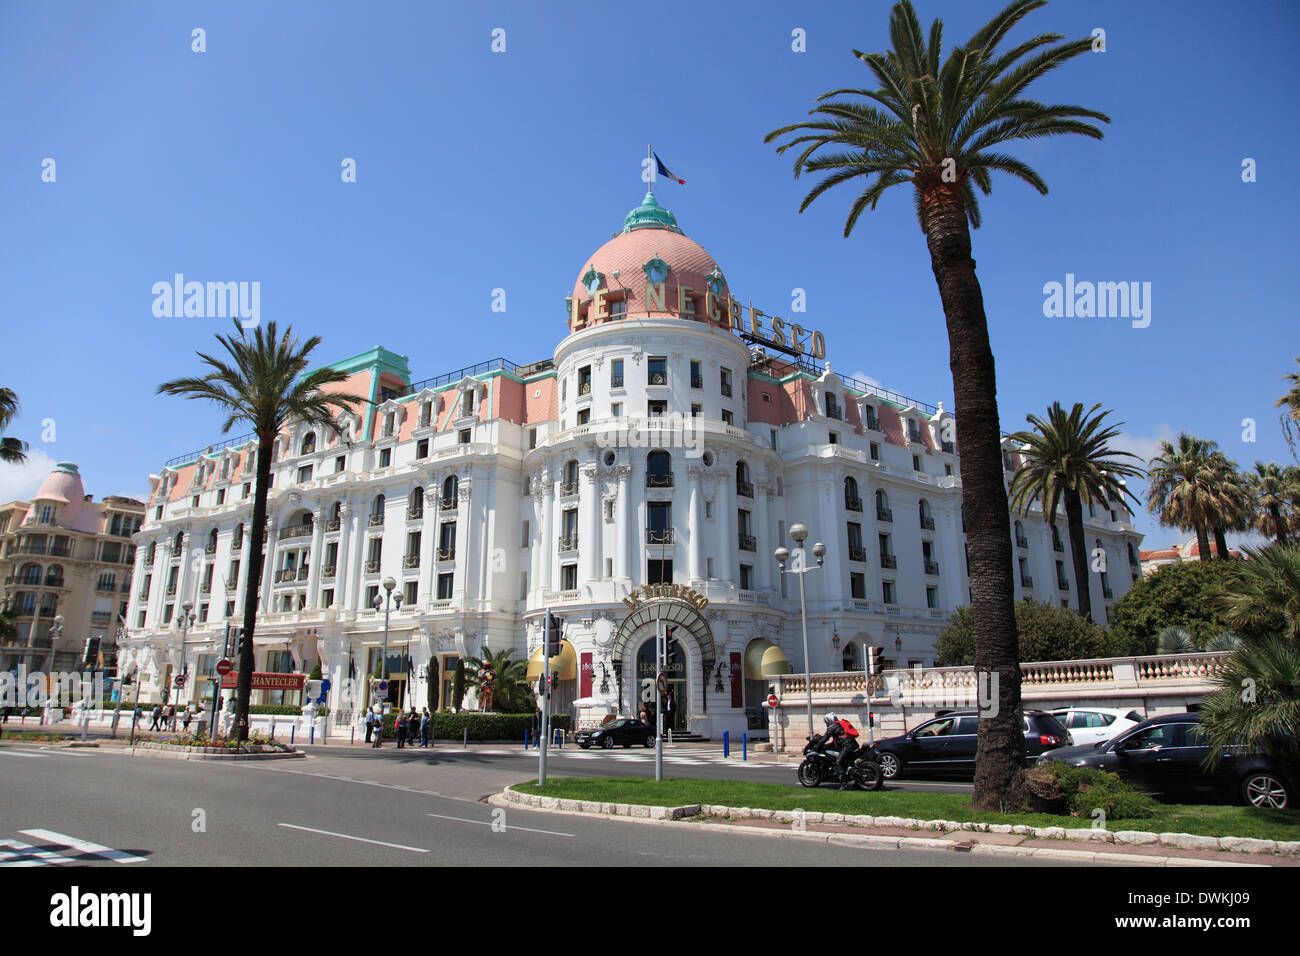 Hôtel Negresco, Promenade des Anglais, Nice, Côte d'Azur, Alpes Maritimes, Provence, Côte d'Azur, France, Europe Banque D'Images